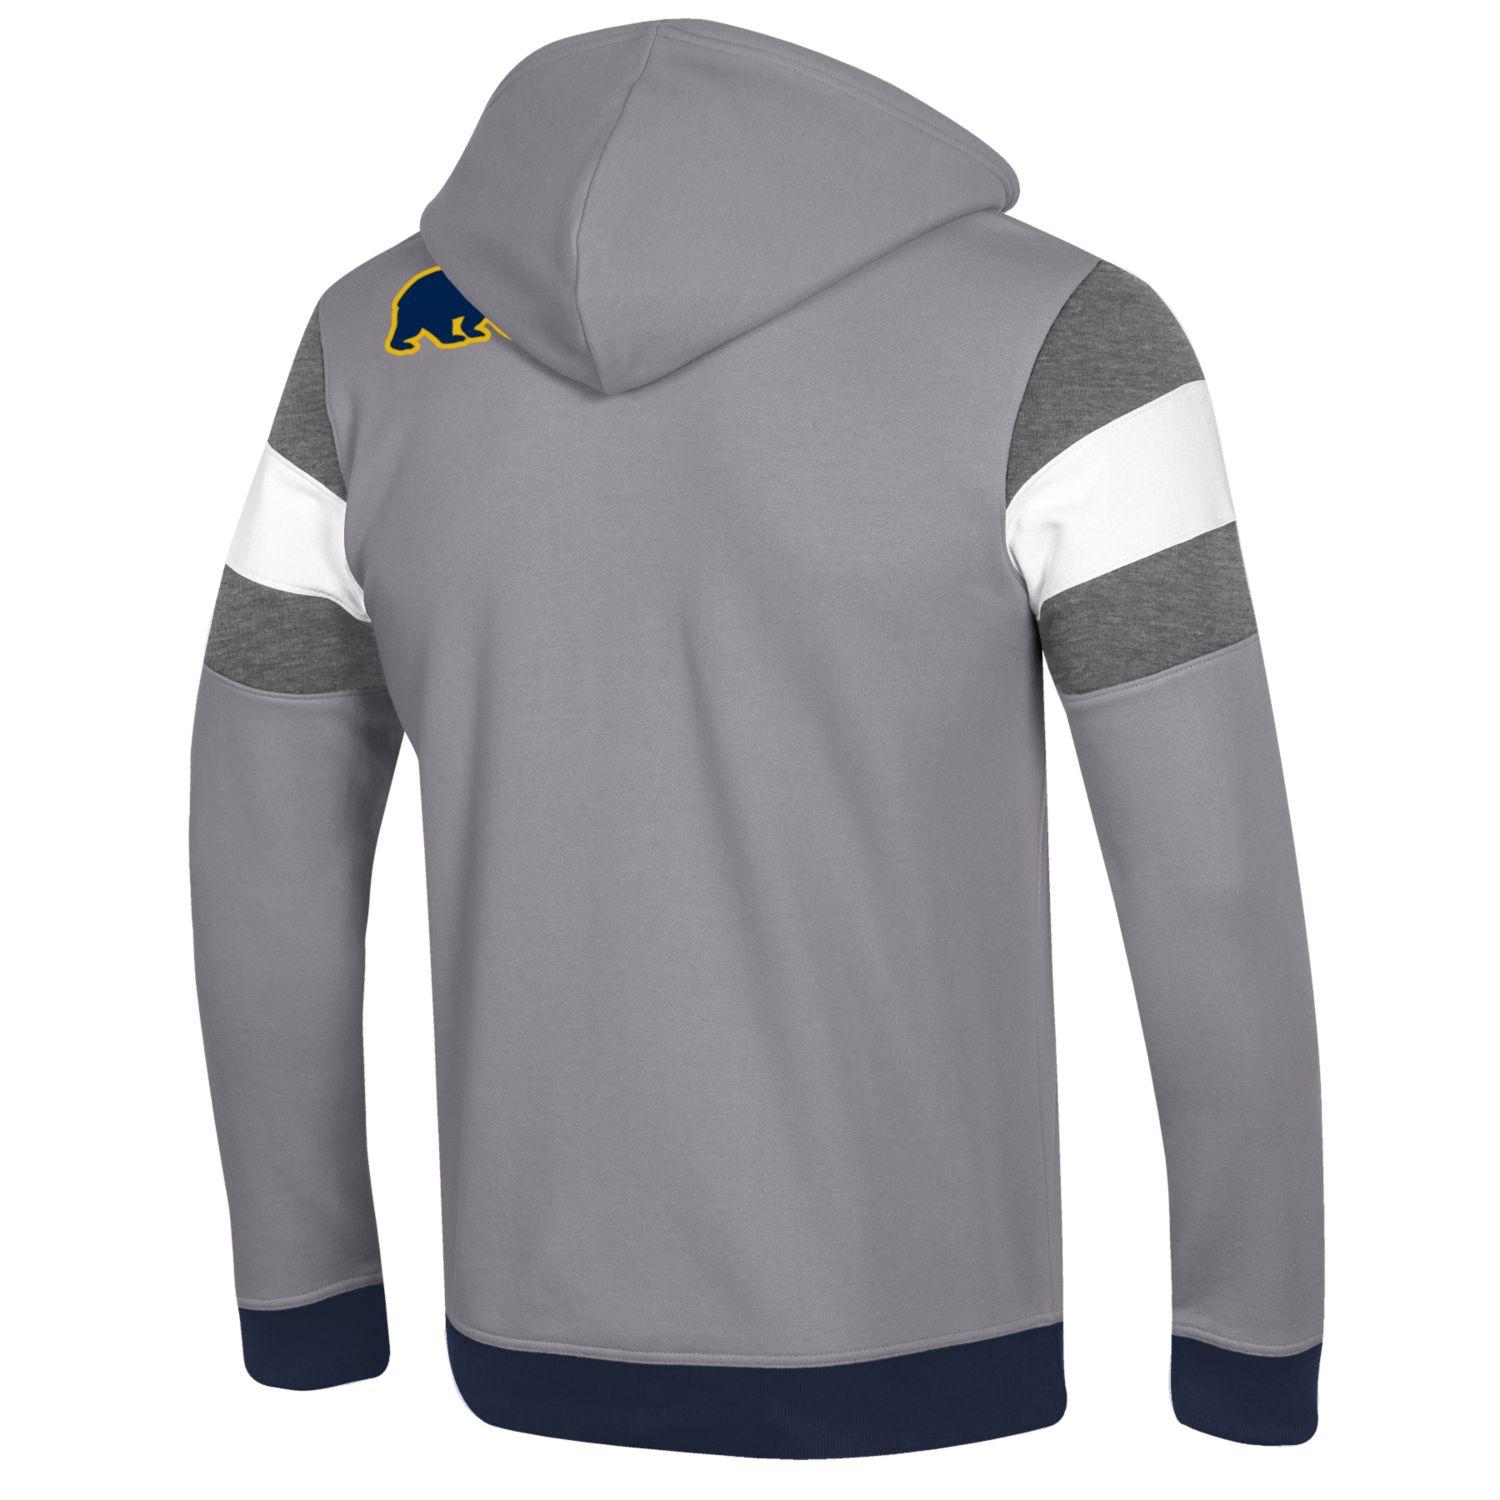 U.C. Berkeley Cal Bears Champion applique zip-up hoodie sweatshirt-Gray-Shop College Wear